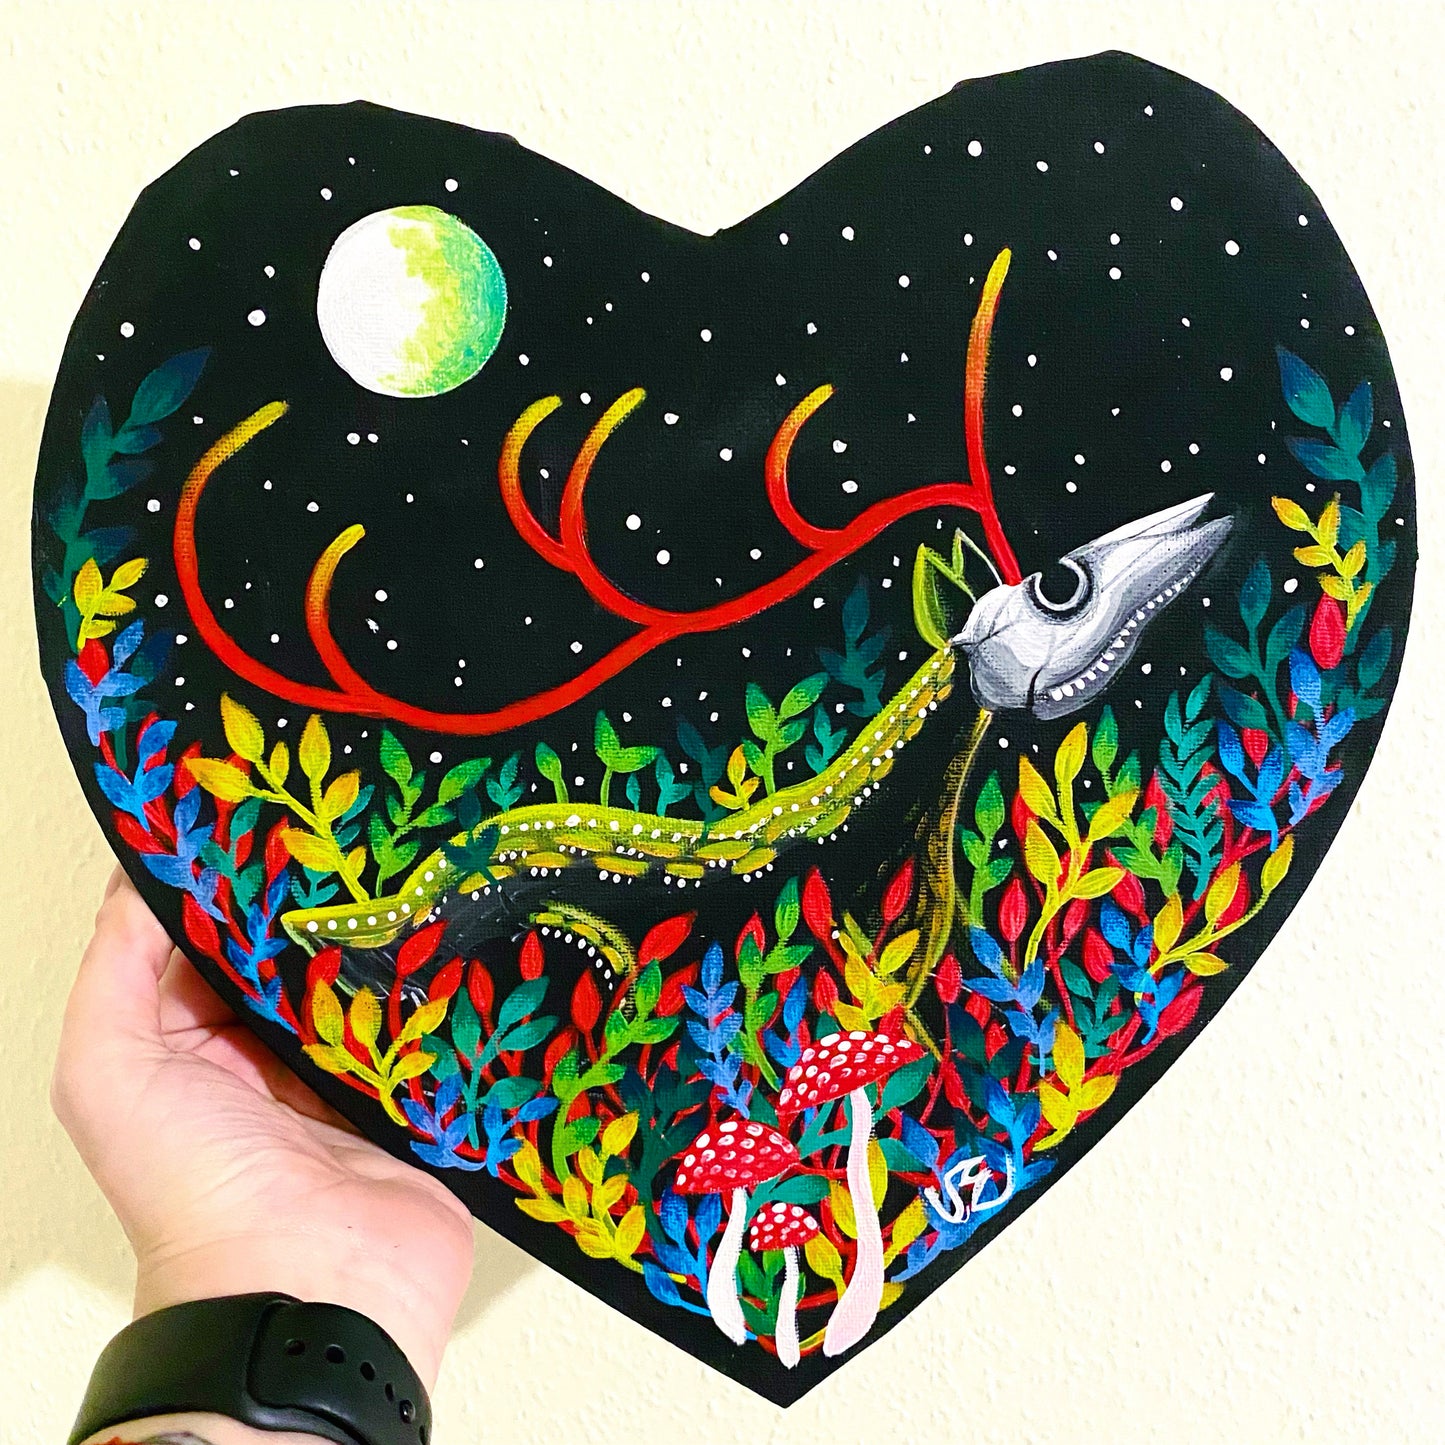 Original artwork - acrylic painting on a heart-shaped canvas / Eredeti akril festmény különleges, szív alakú vásznon